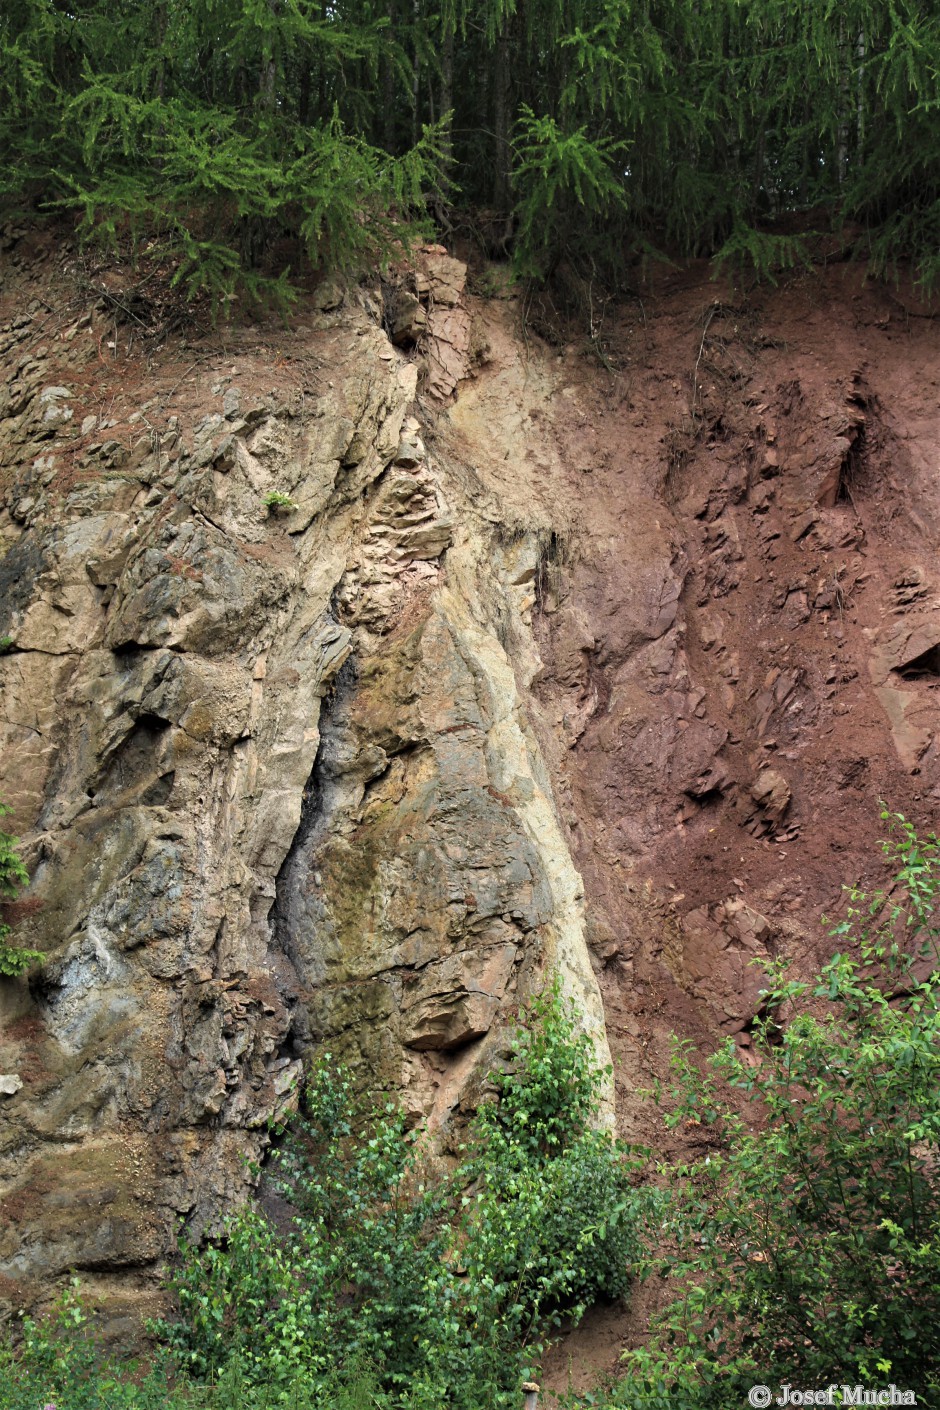 Malé Svatoňovice - bunkr - rozhraní červenohnědých permských a šedých křídových sedimentů - detail